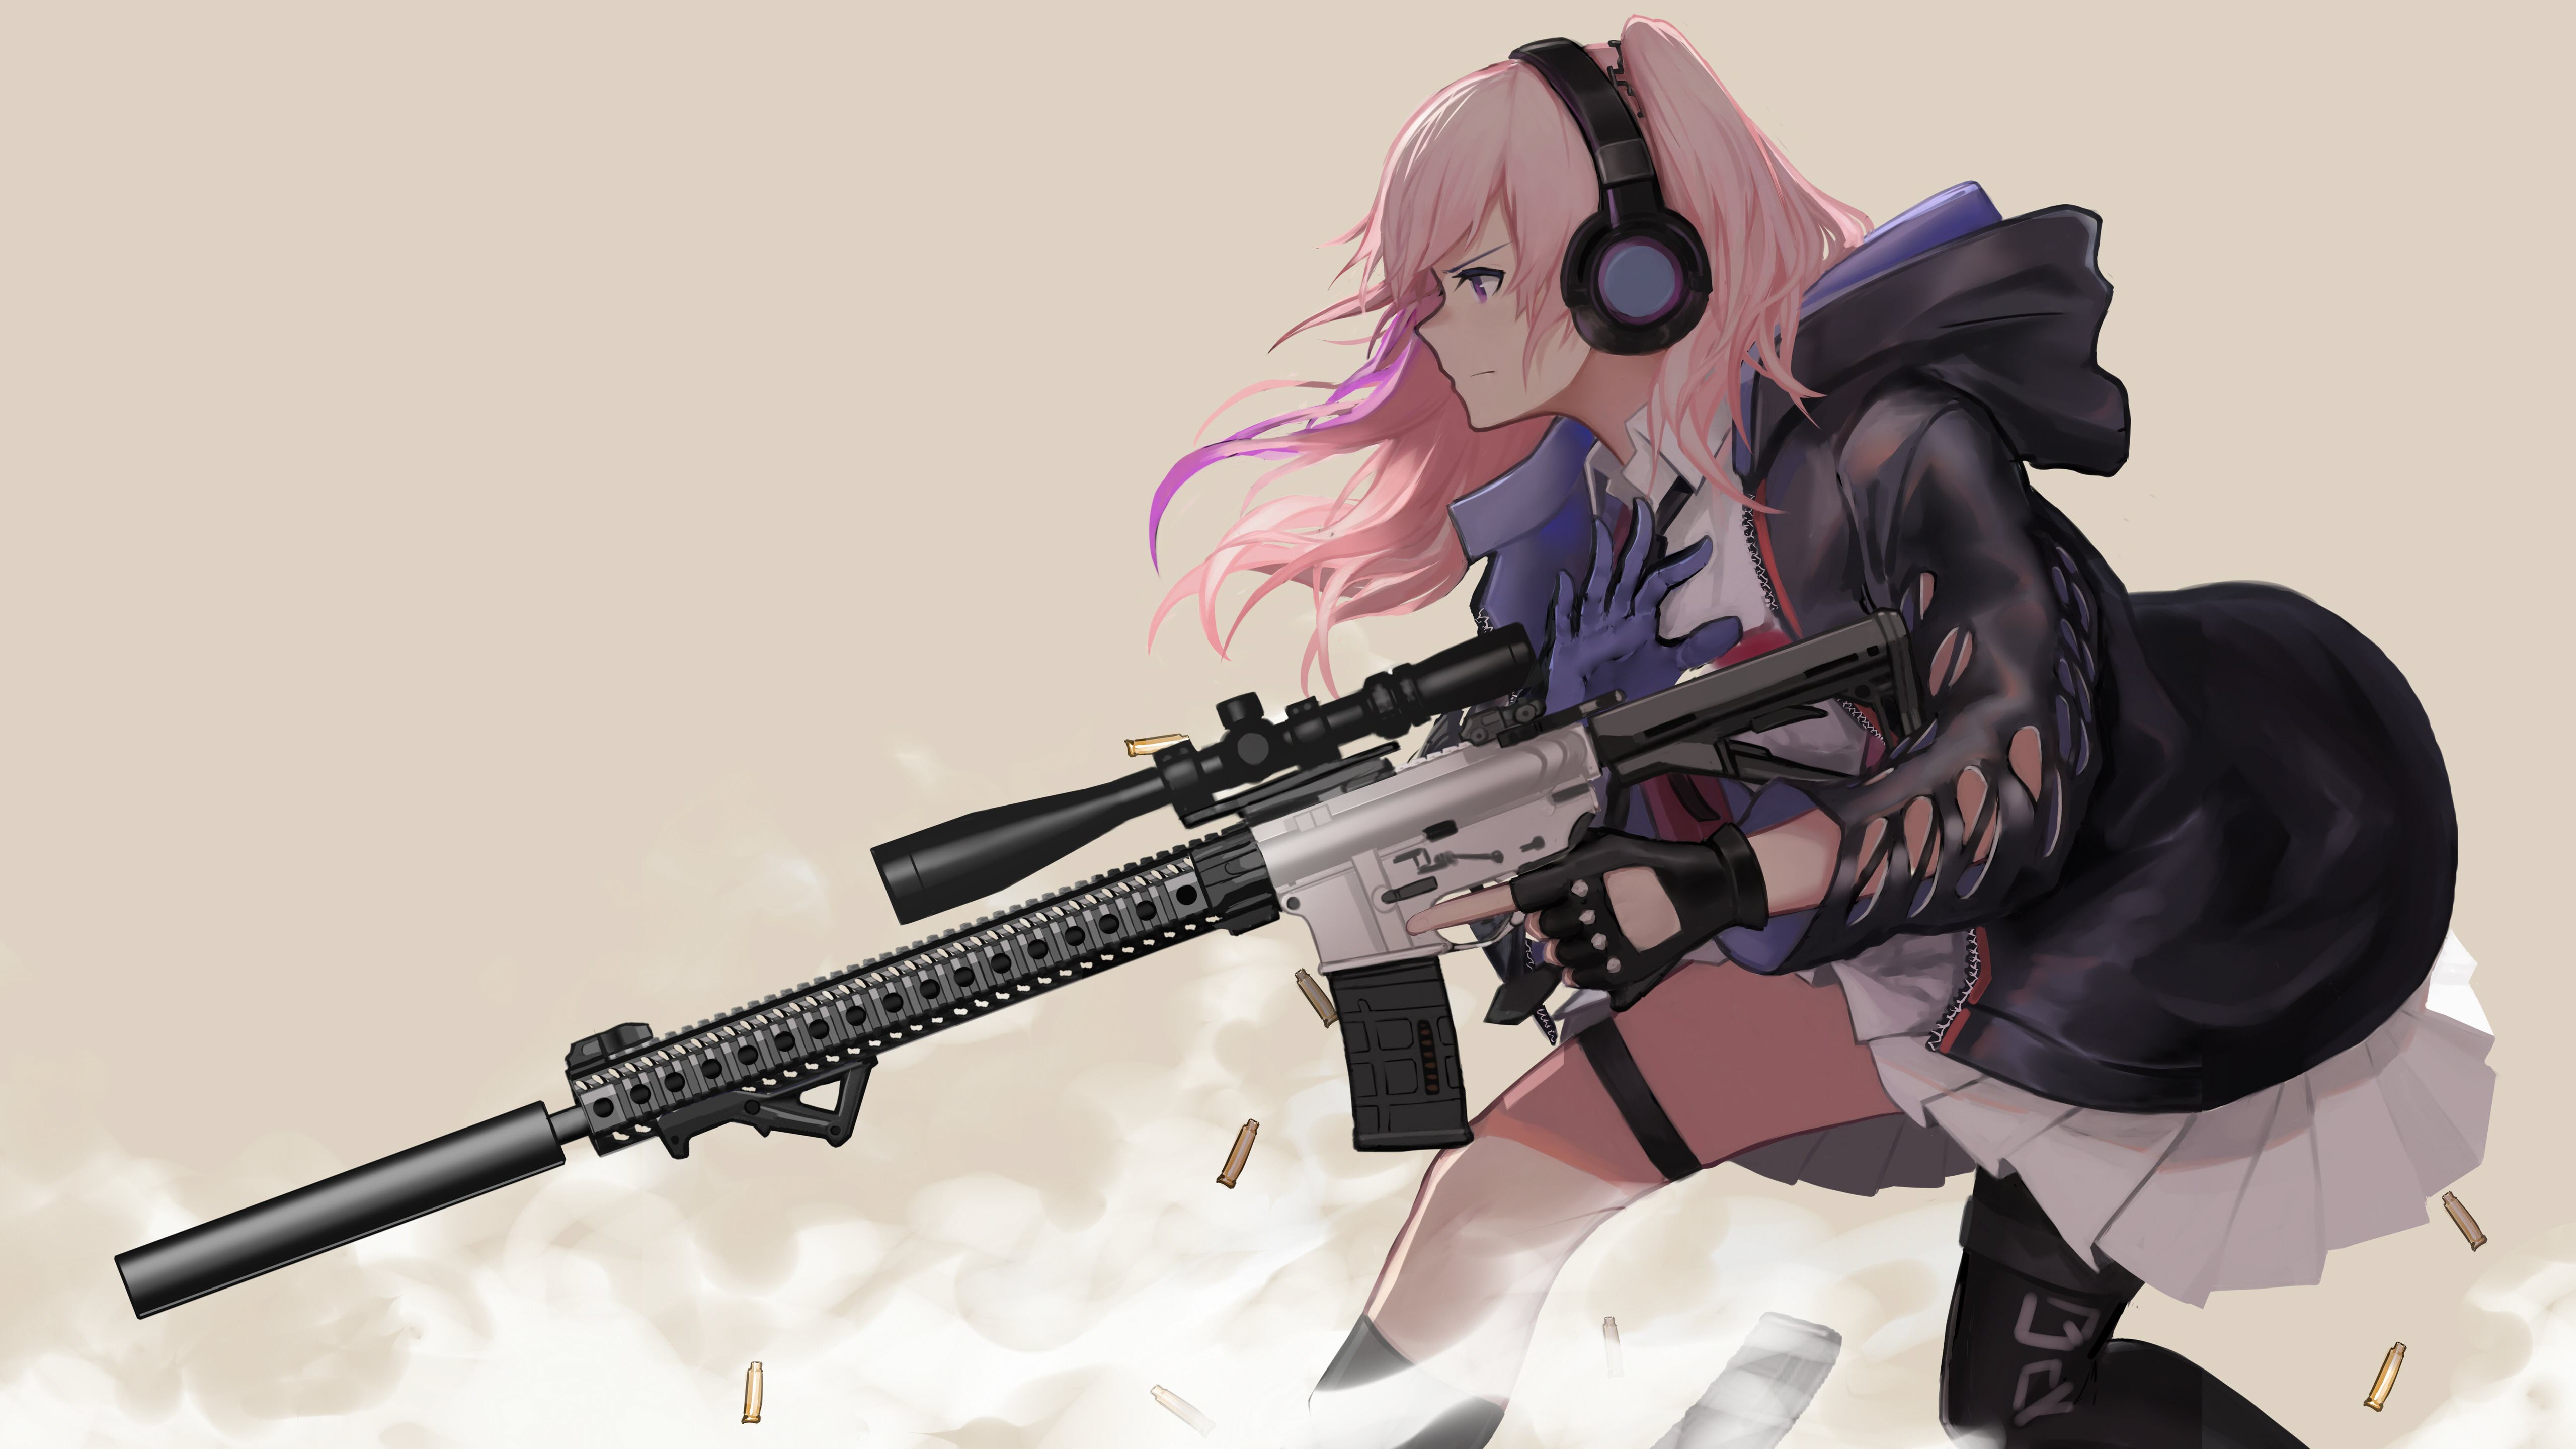 Ảnh nền Anime nữ cầm súng ngầu chất lượng cao 5K